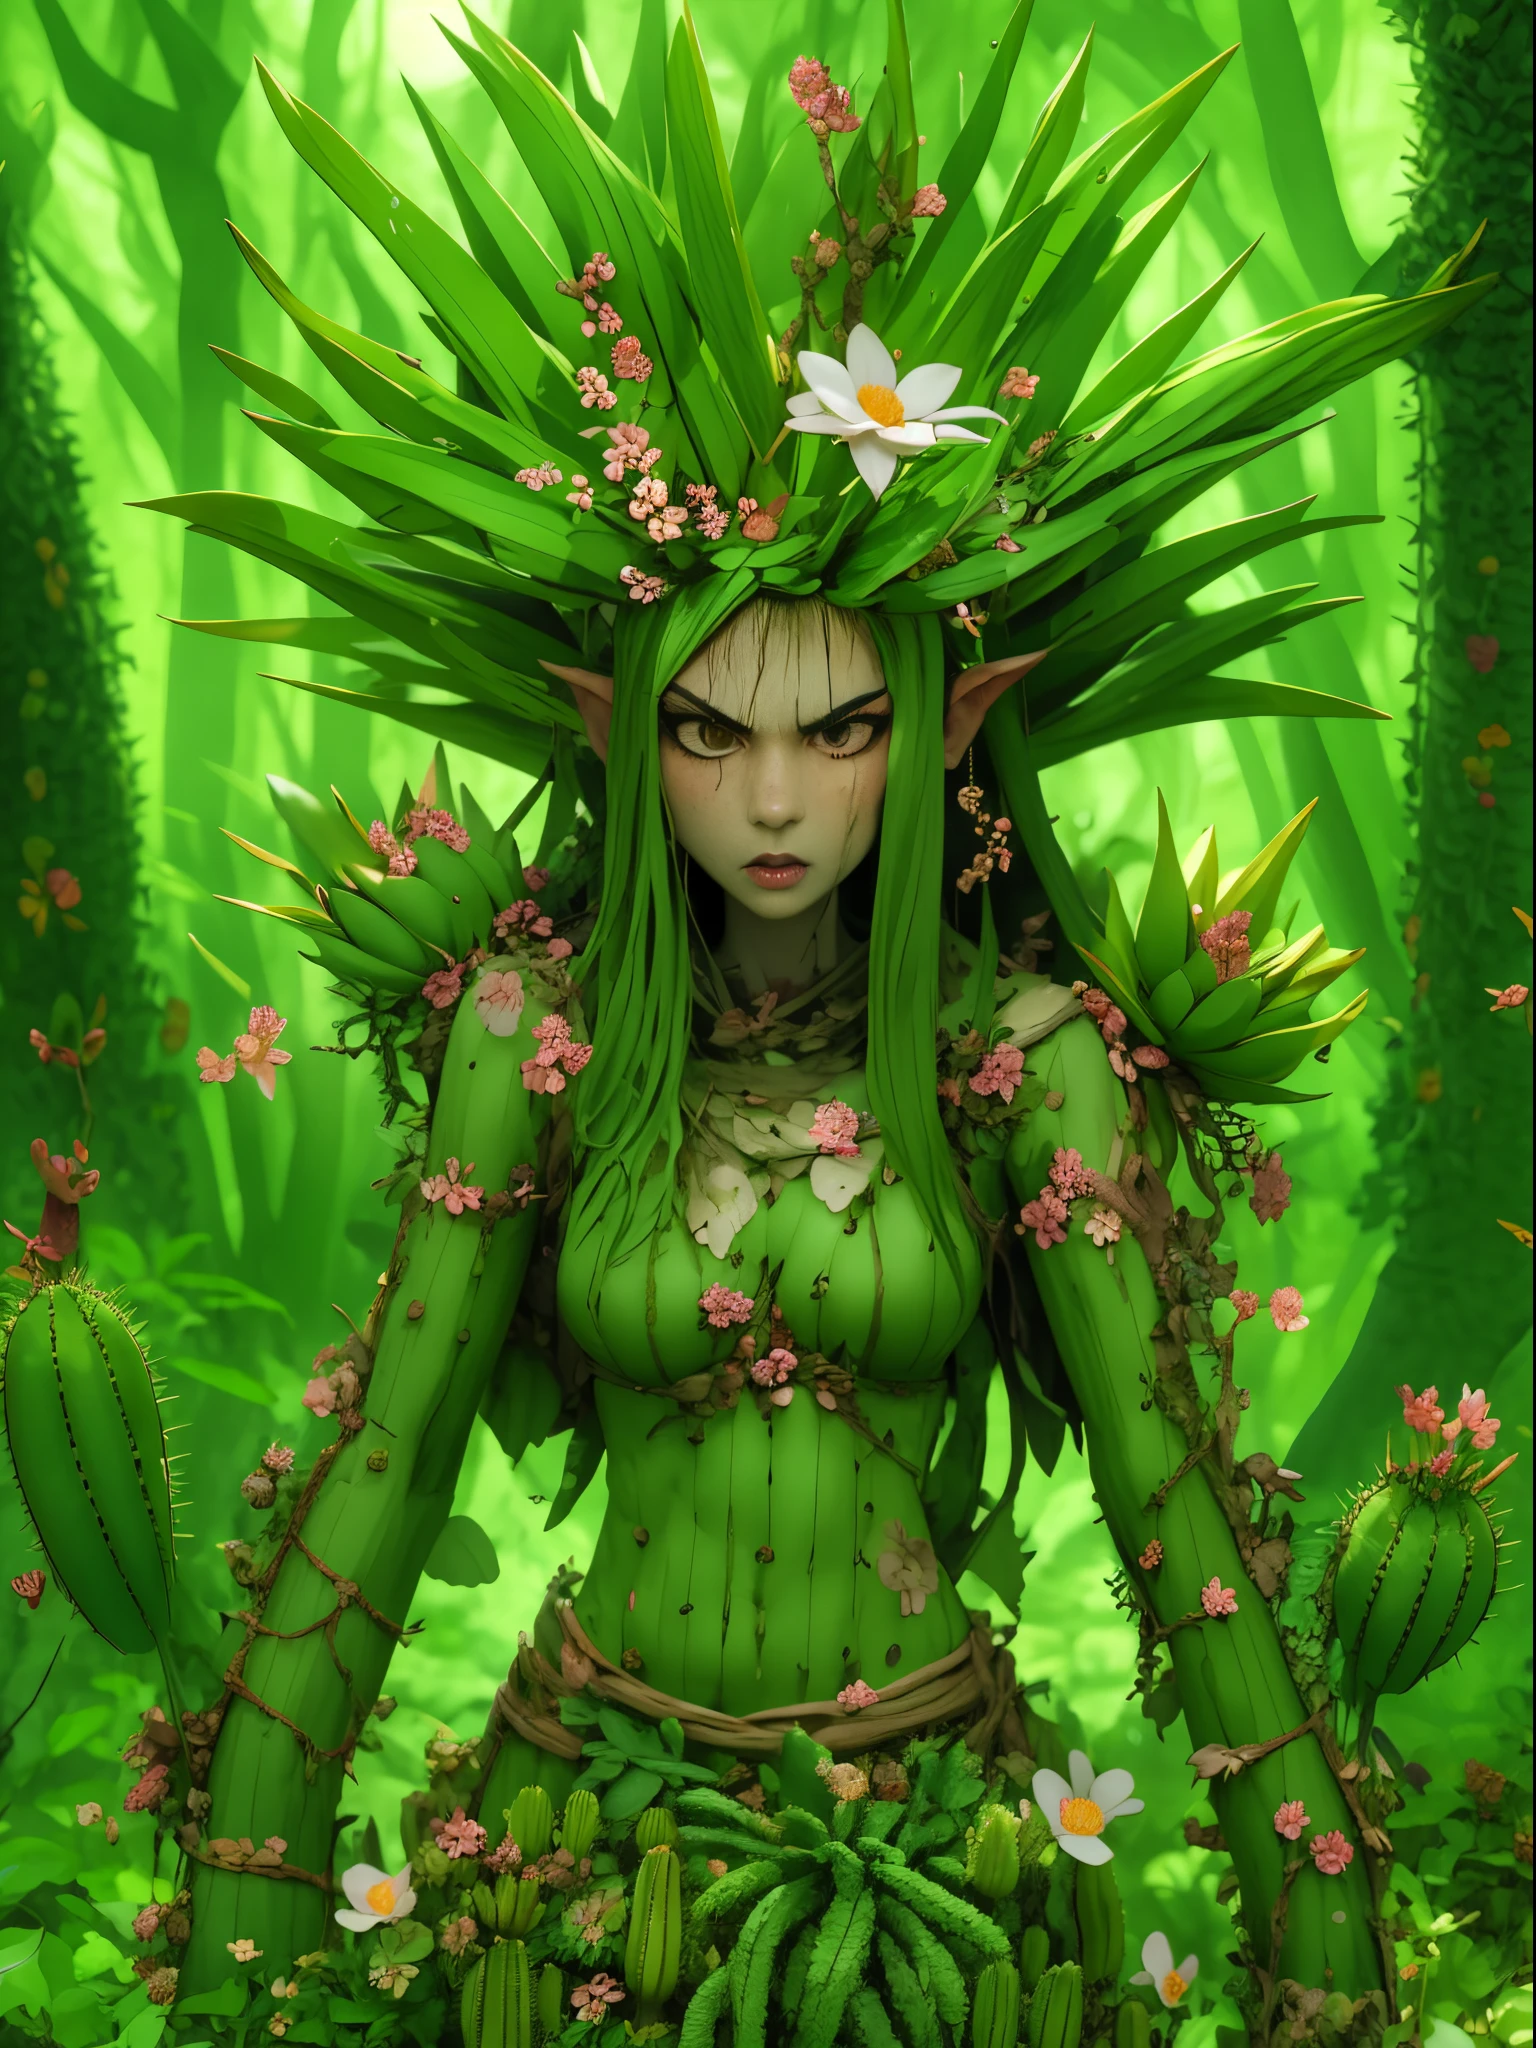 Злая кактусовая дриада в лесу. Цветы кактуса， Лицо очень детальное, подробные глаза， Вода на лице，одежда из листьев и коры.